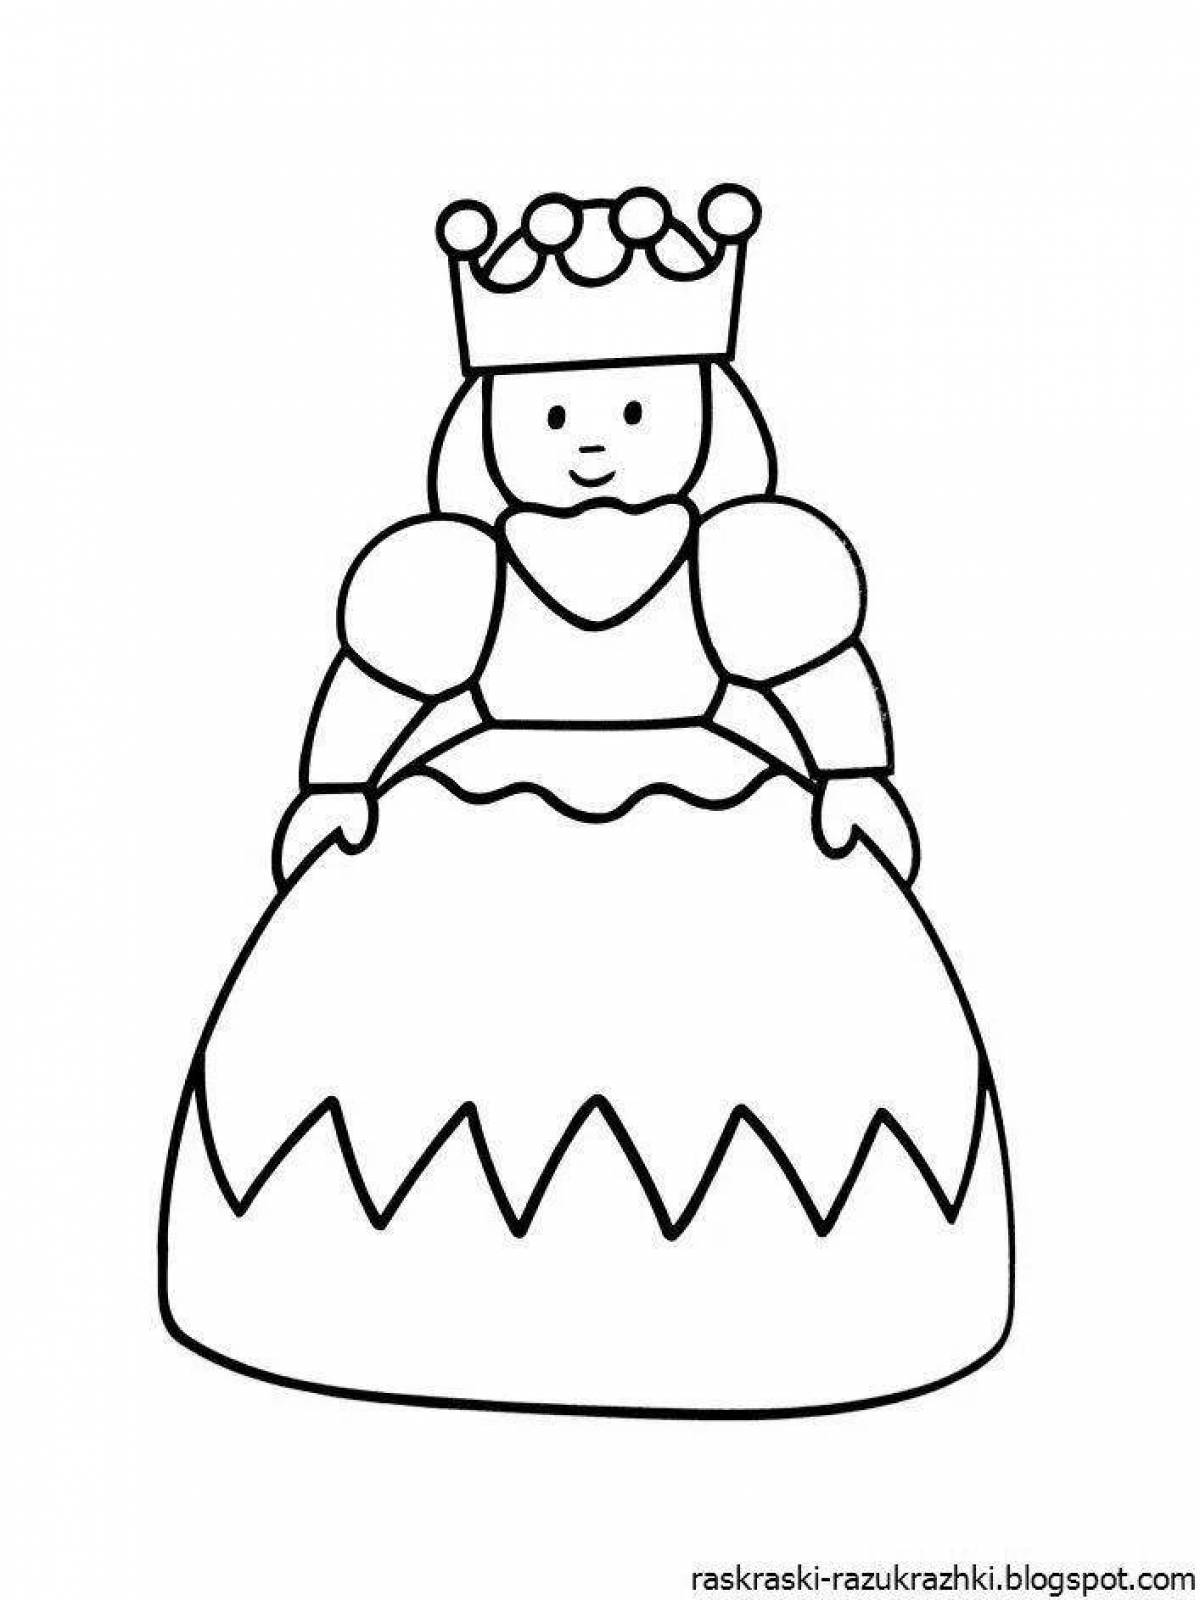 Веселая королева раскраски для детей